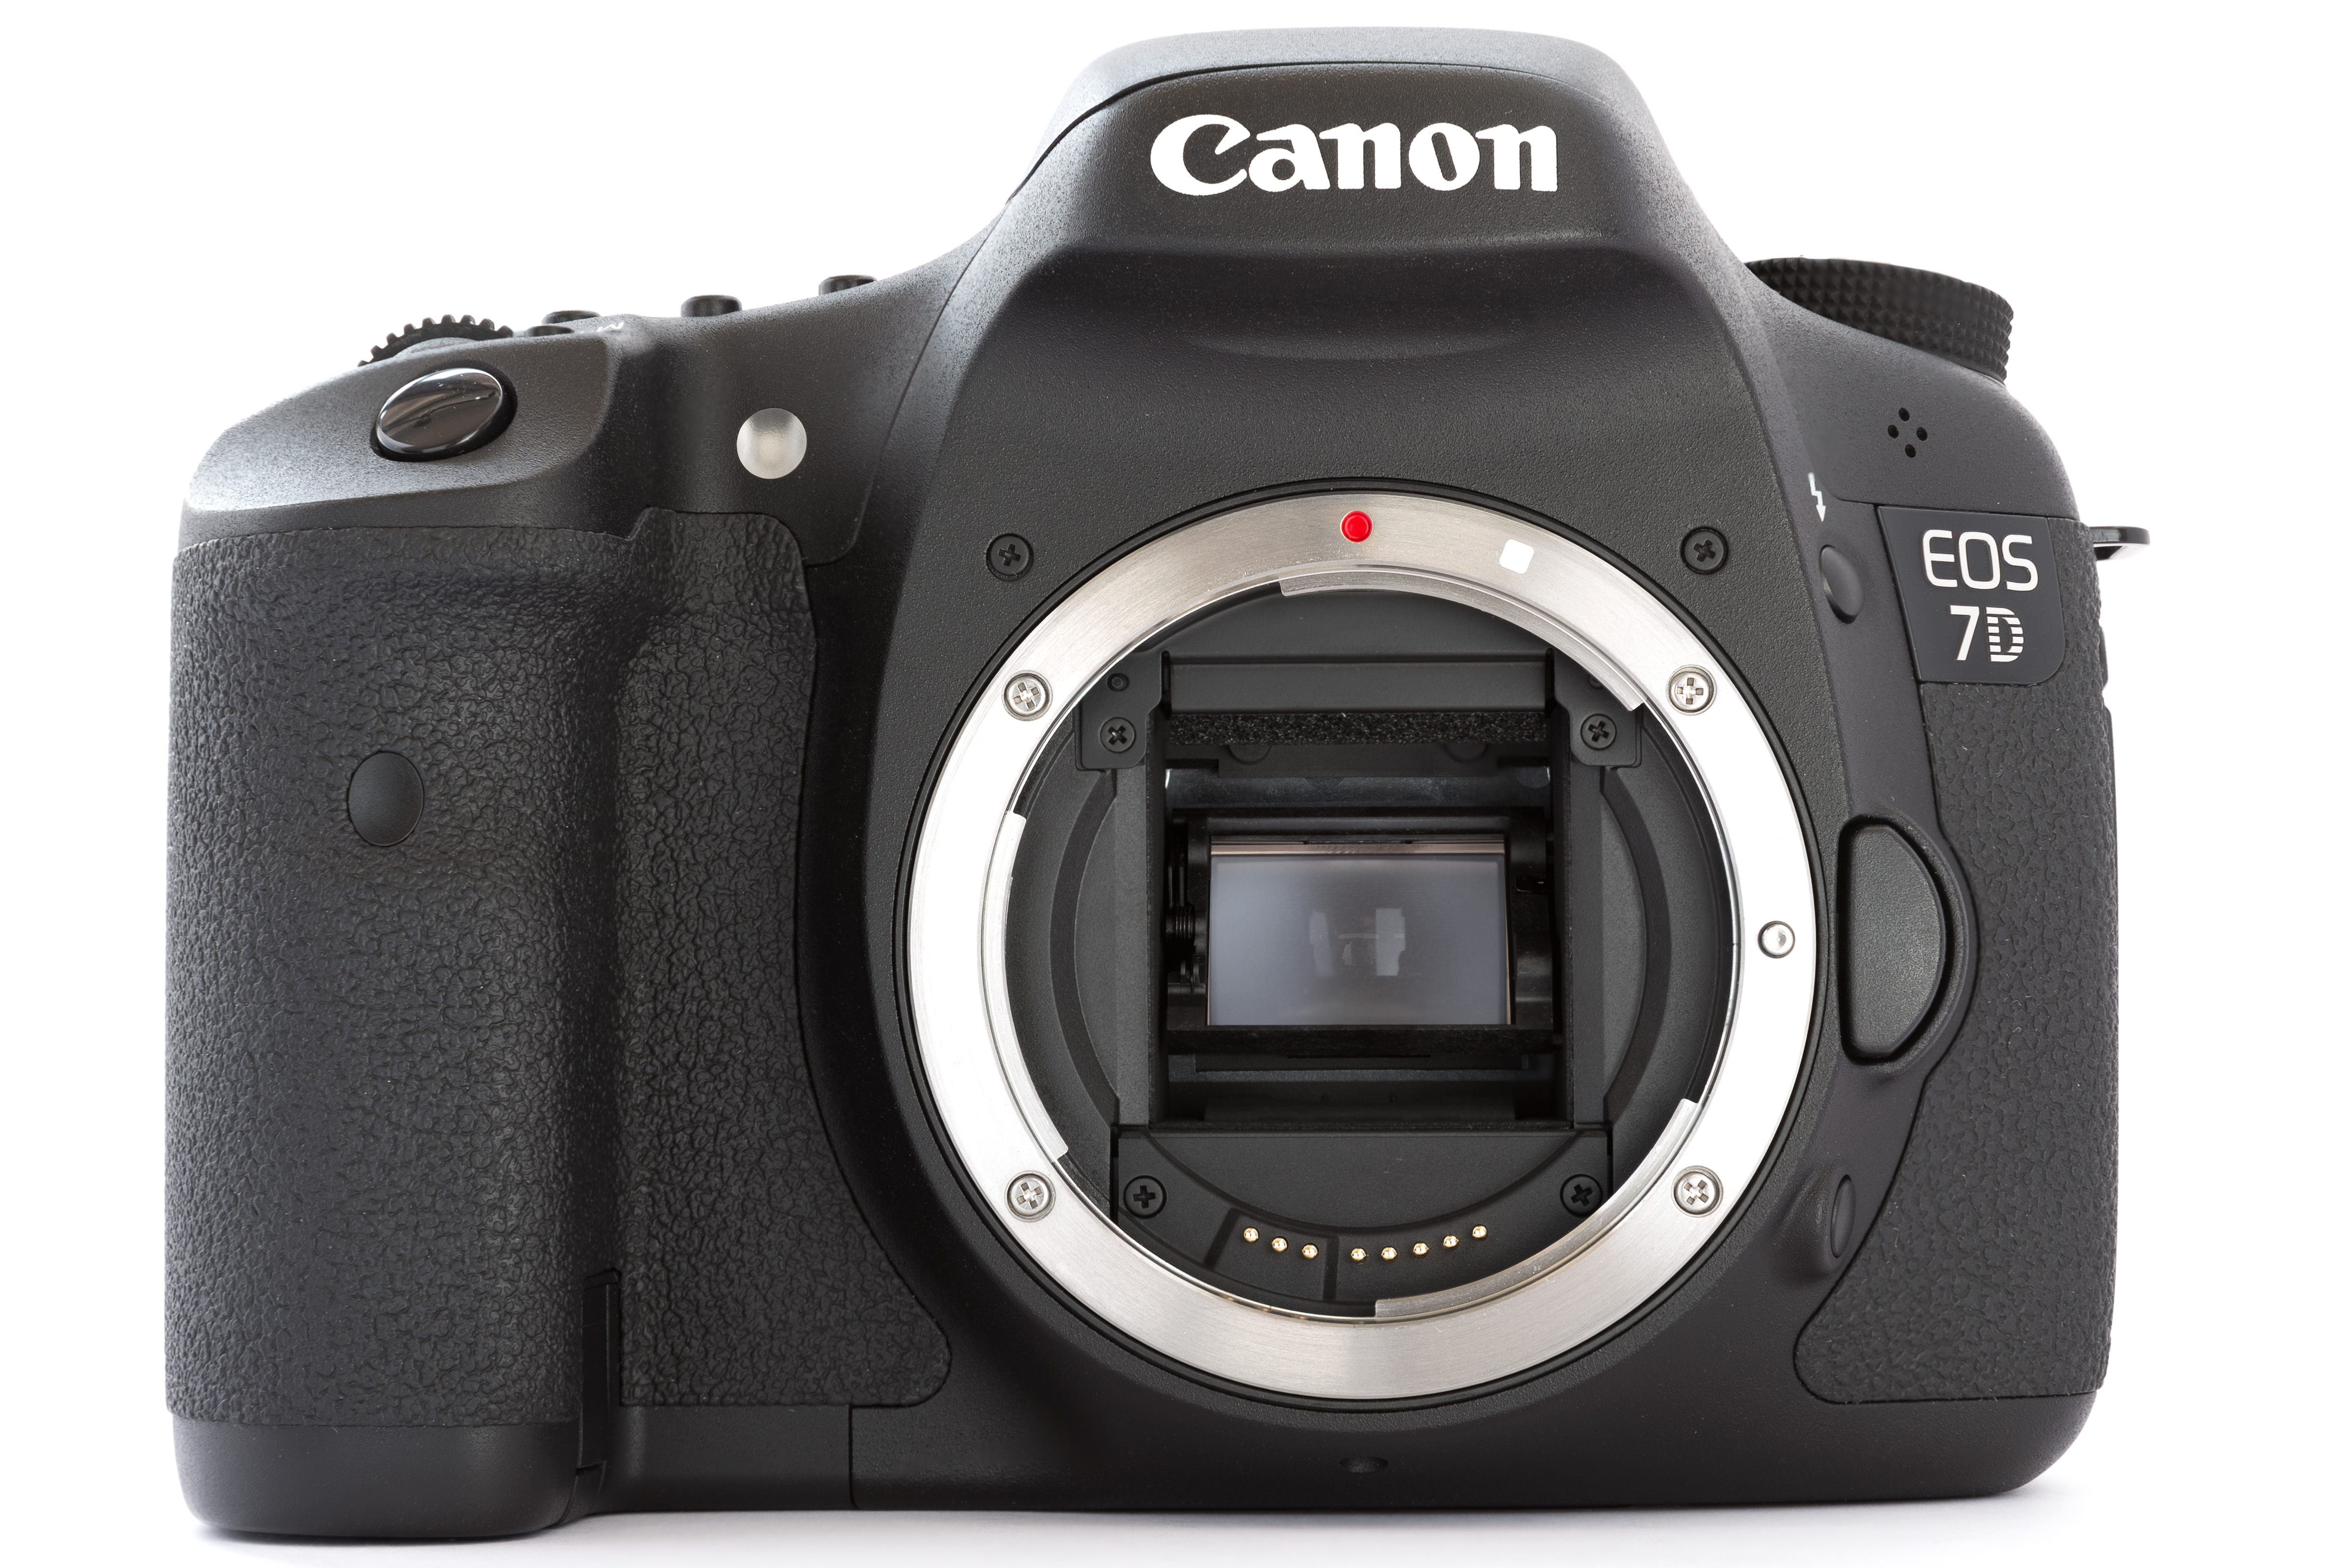 Canon EOS 7D DSLR body front